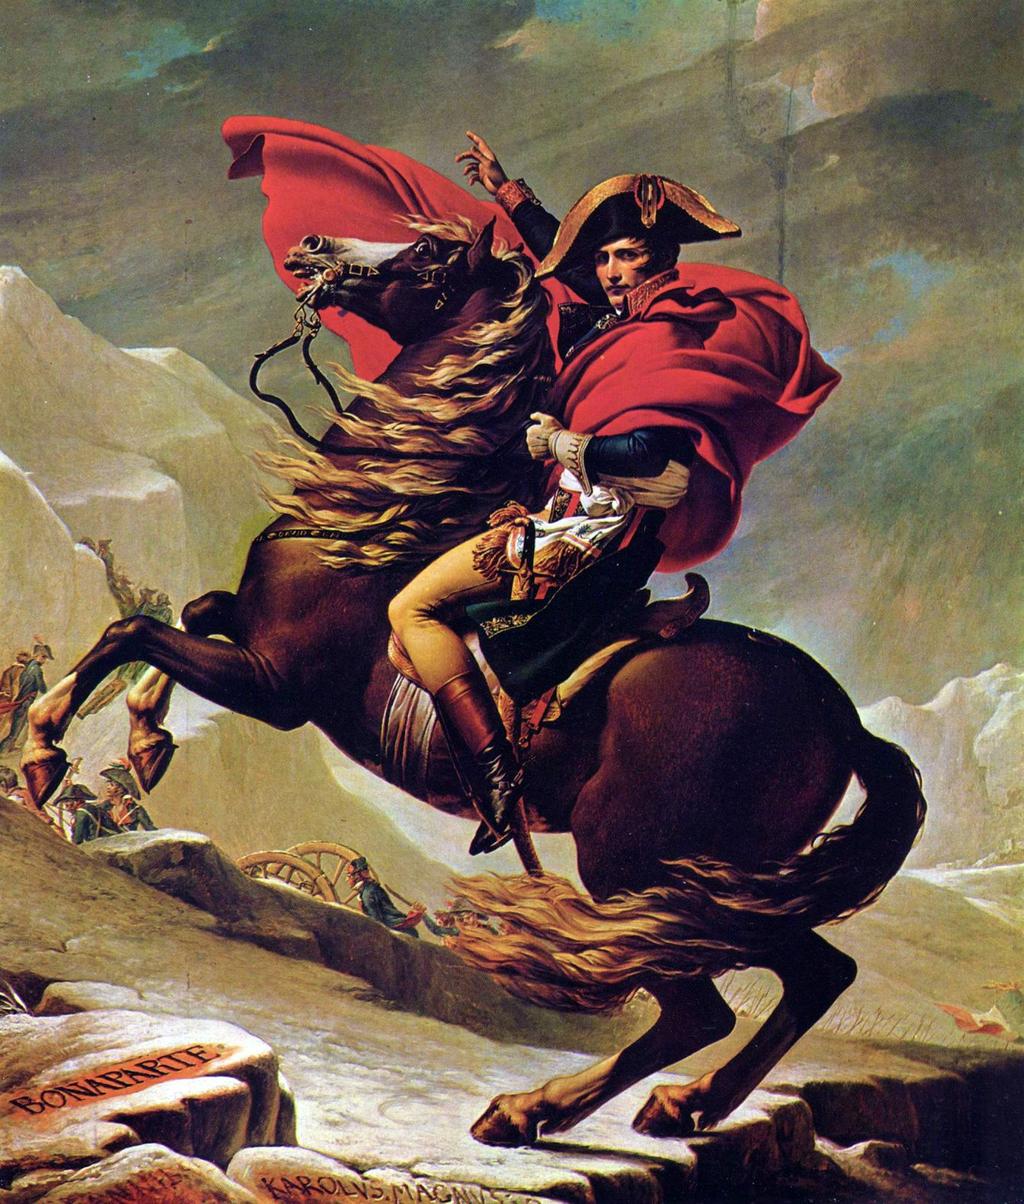 a) Repare o gesto e o olhar de Napoleão, a posição do cavalo, as cores